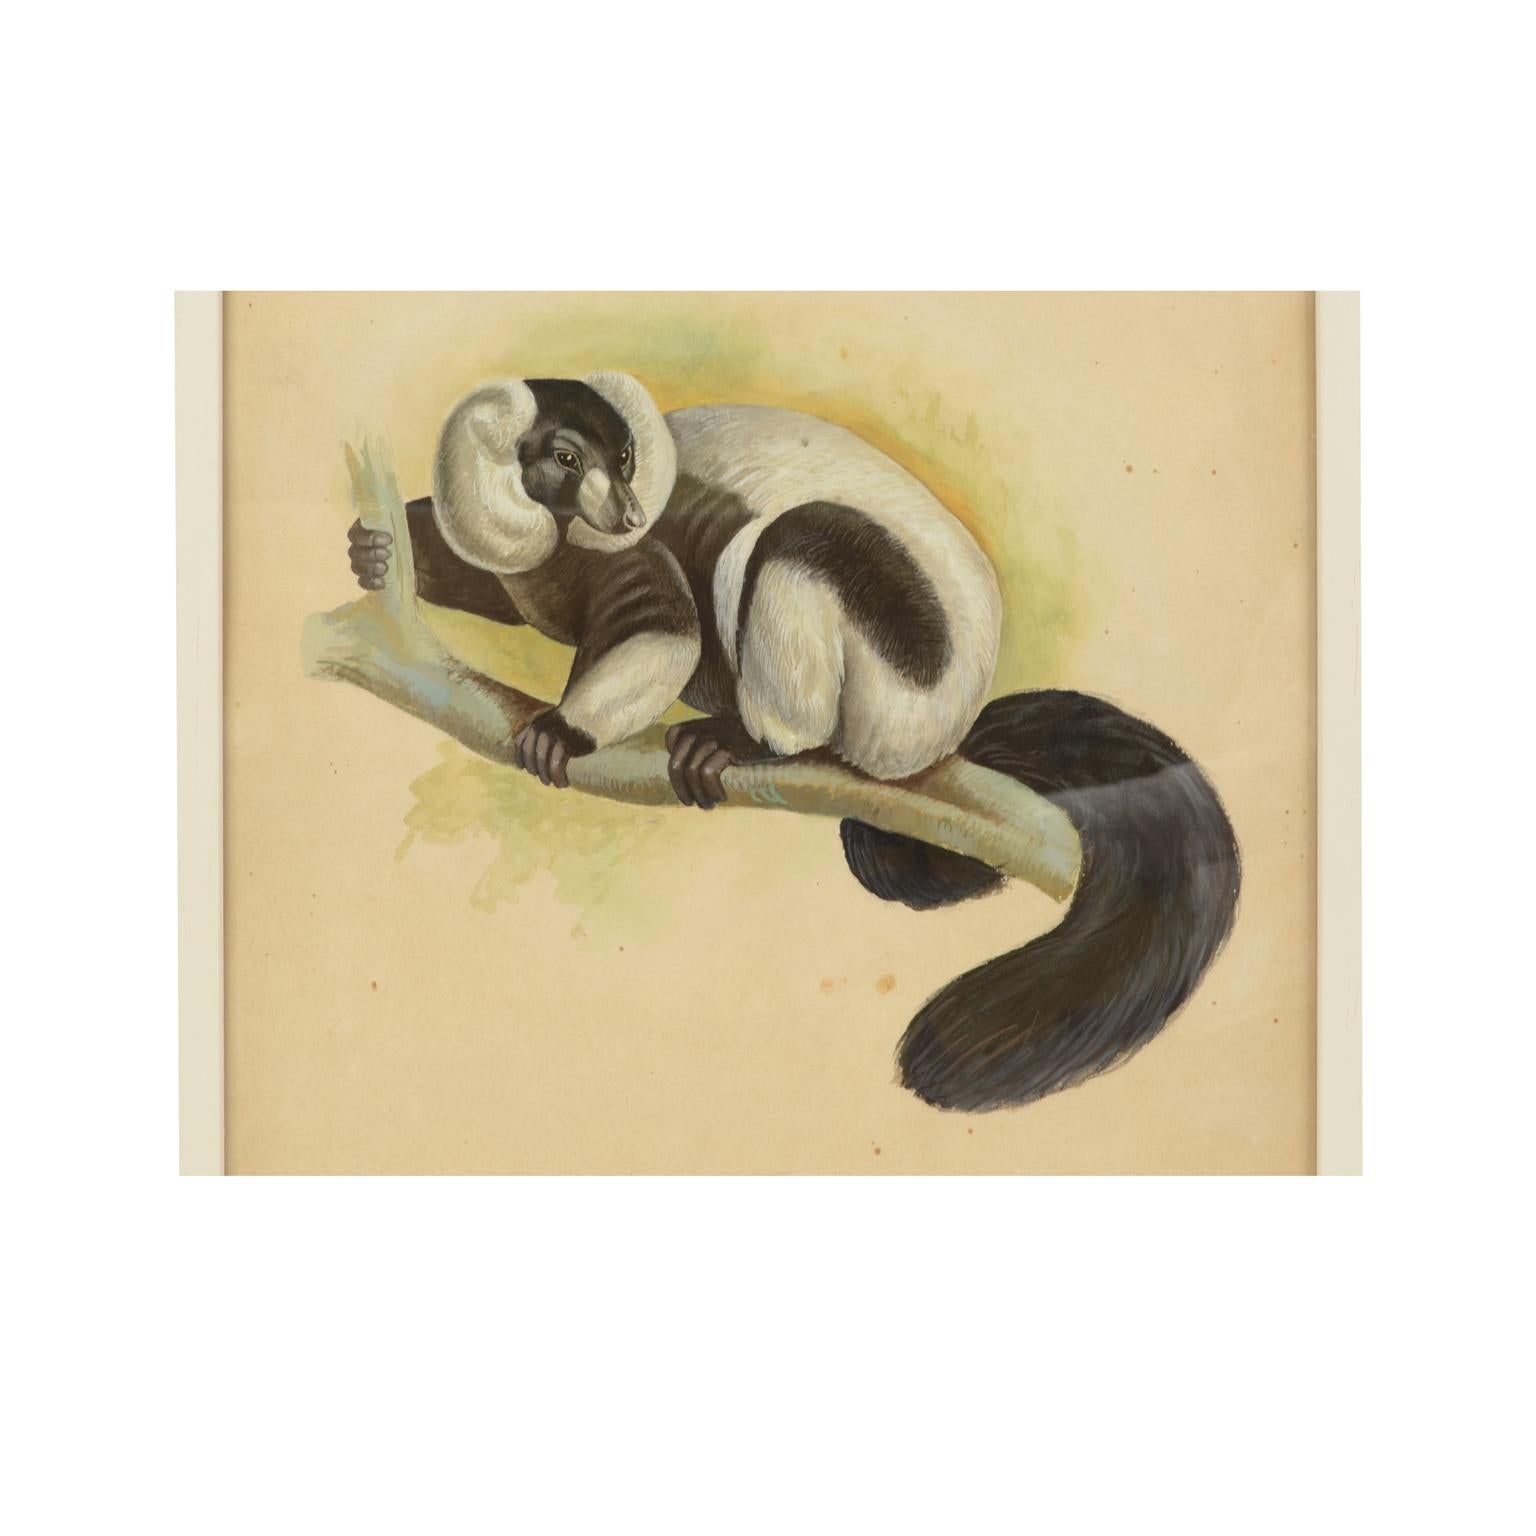 Couleurs acryliques sur papier représentant un singe ; il s'agit d'une esquisse préparatoire commandée pour une encyclopédie des animaux pour enfants, créée et signée par un artiste coréen dans les années 1970. Très bon état. Avec cadre 49,5 x 67